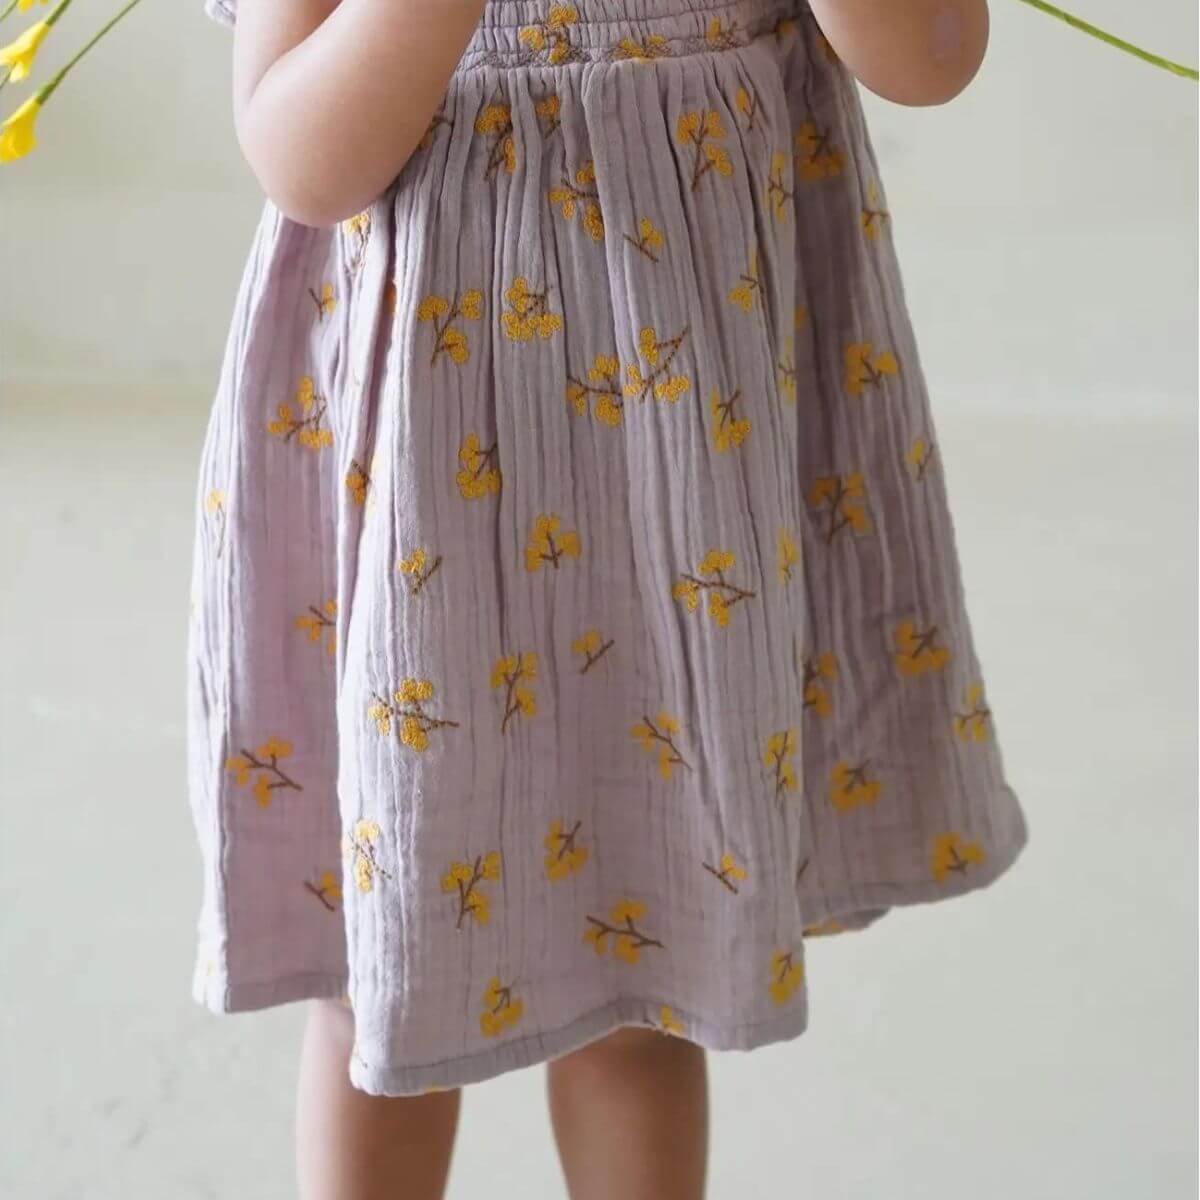 Haven Toddler Organic Floral Dress - Lavender skirt detail close up on model